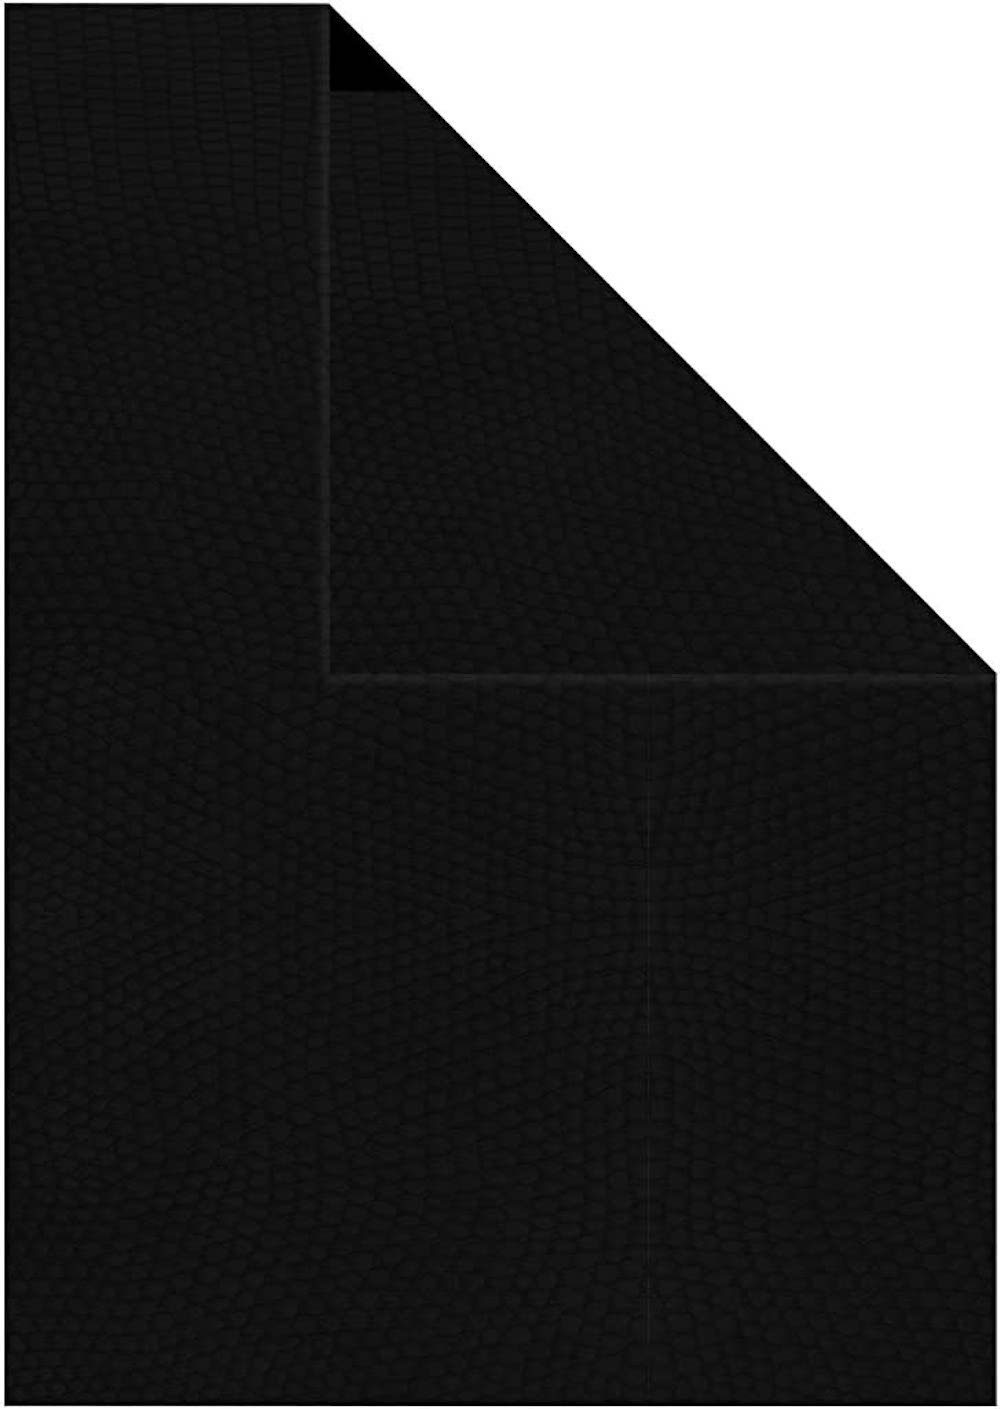 Creotime Zeichenpapier Duo Papier Strukturpapier, A4 21x30 cm, 100g, 20Bl Schwarz